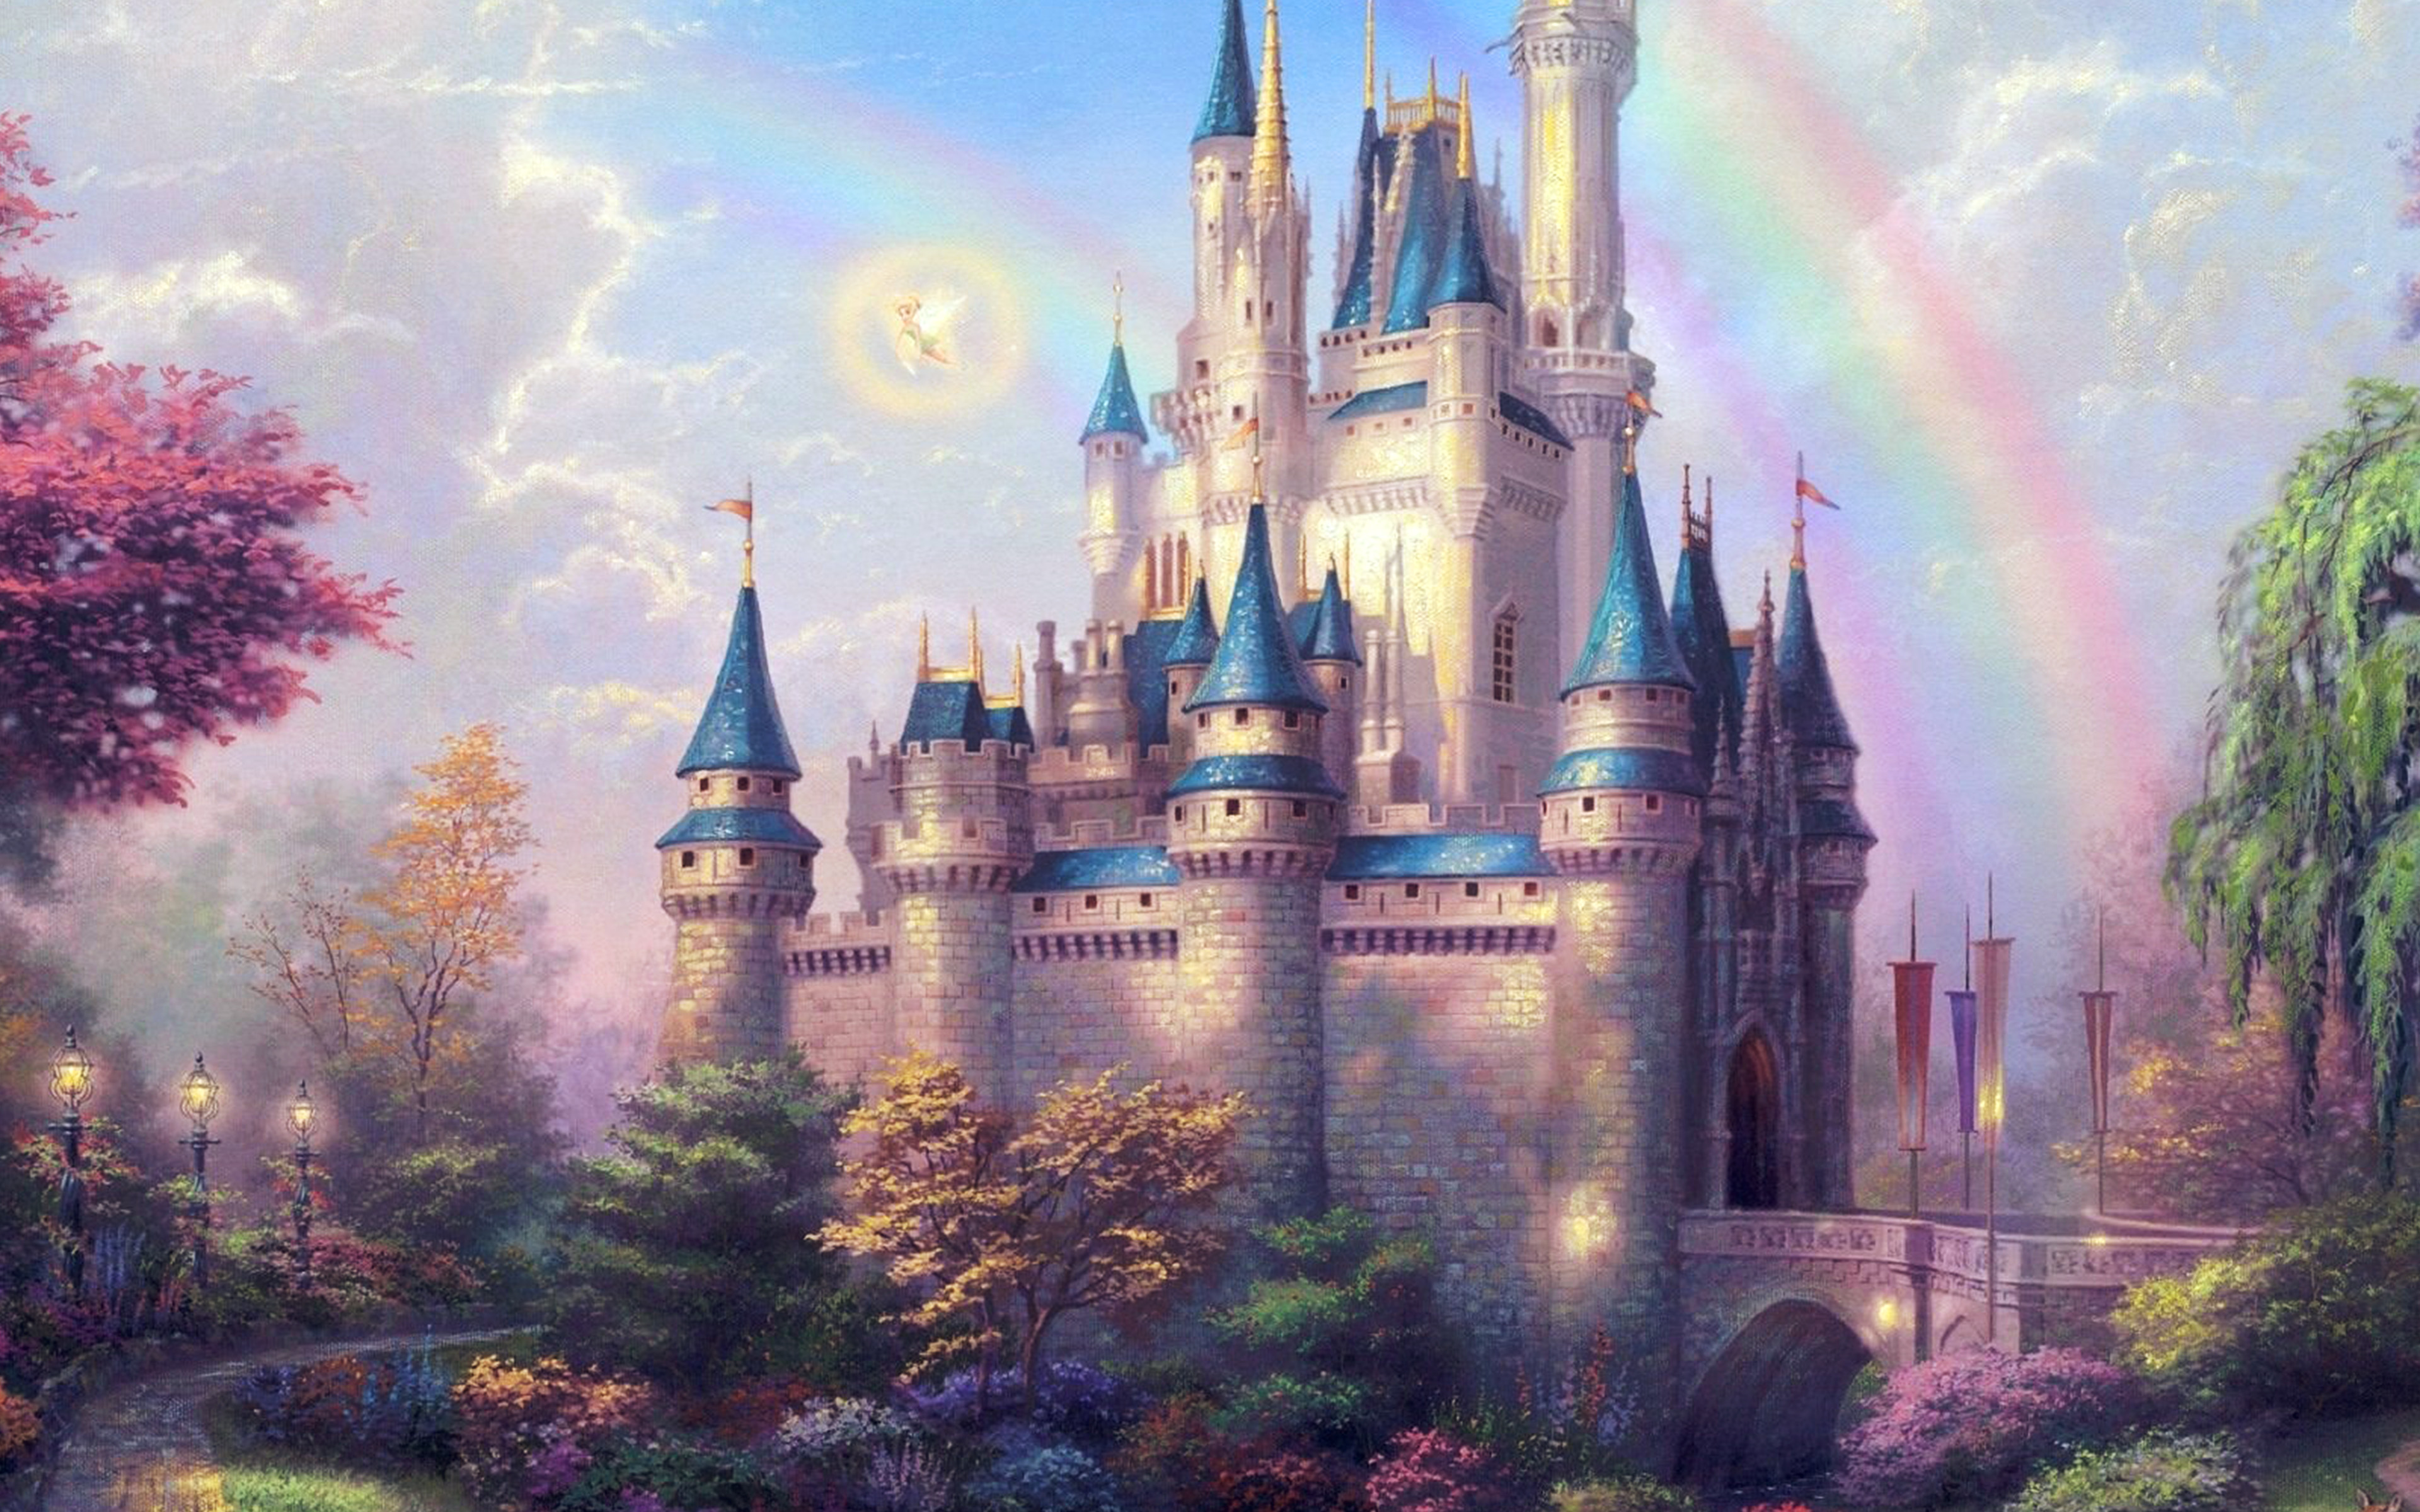 Fantasy Castle Illustration Cute Disney Wallpaper